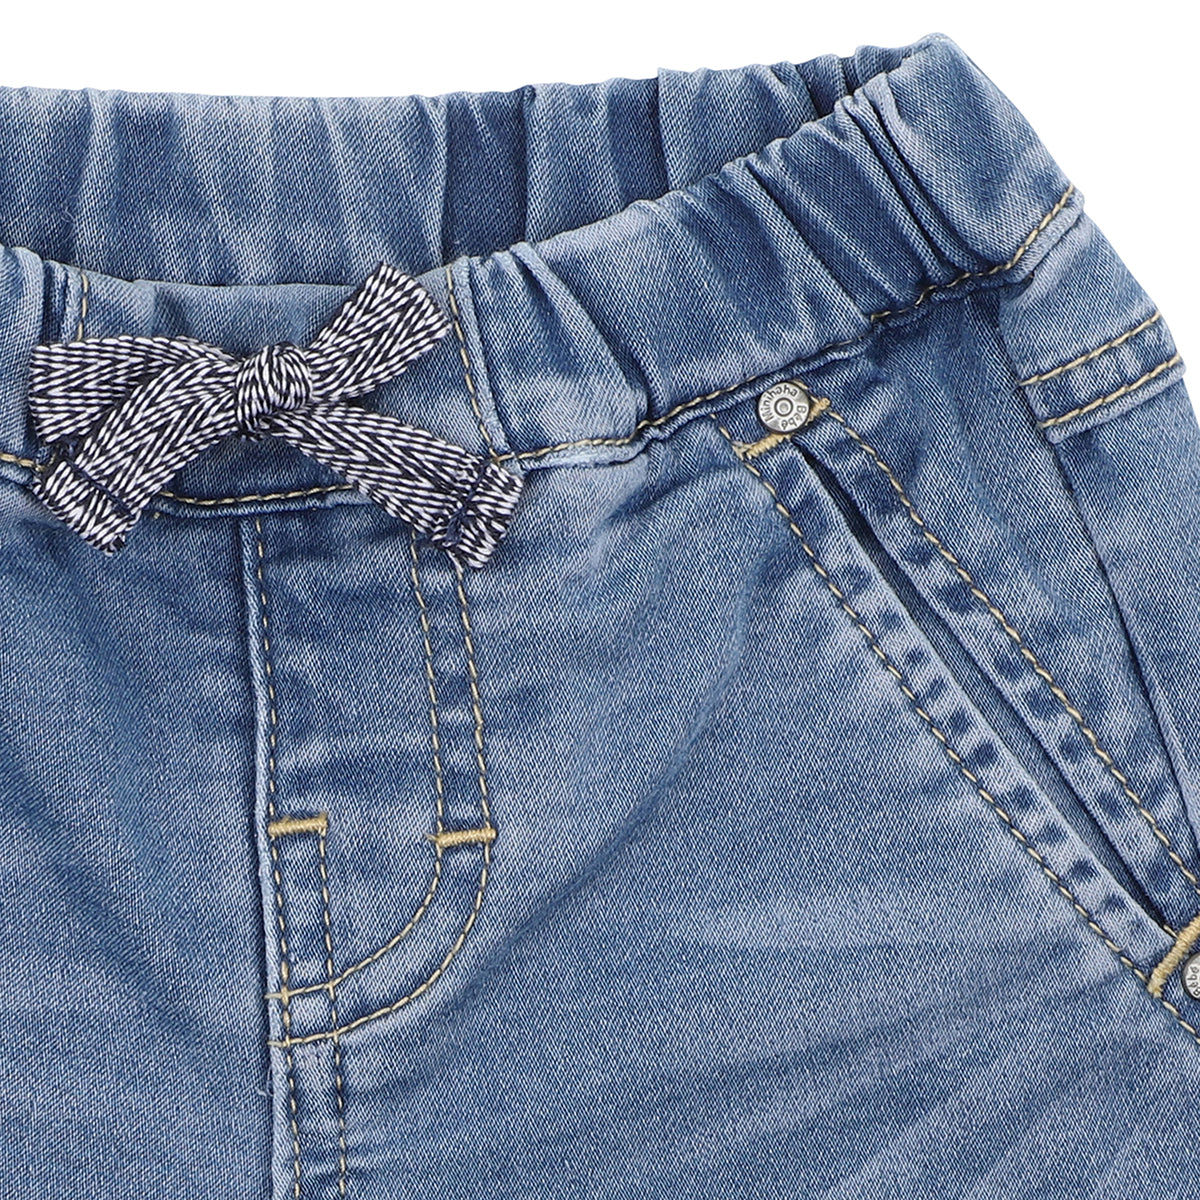 Knit Denim Shorts | Indigo